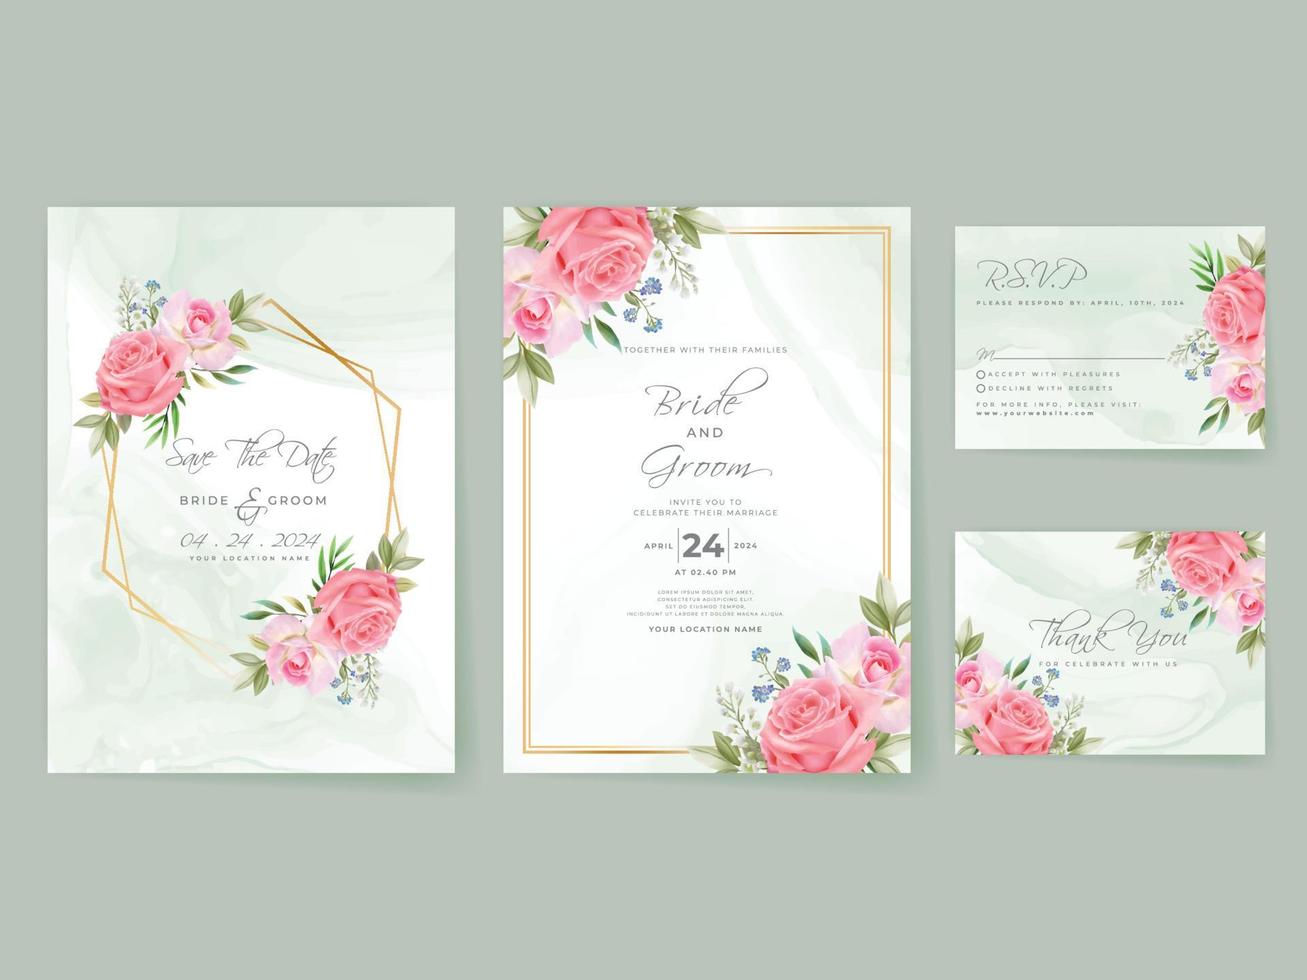 conjunto de tarjeta de invitación de boda de rosas rosadas vector